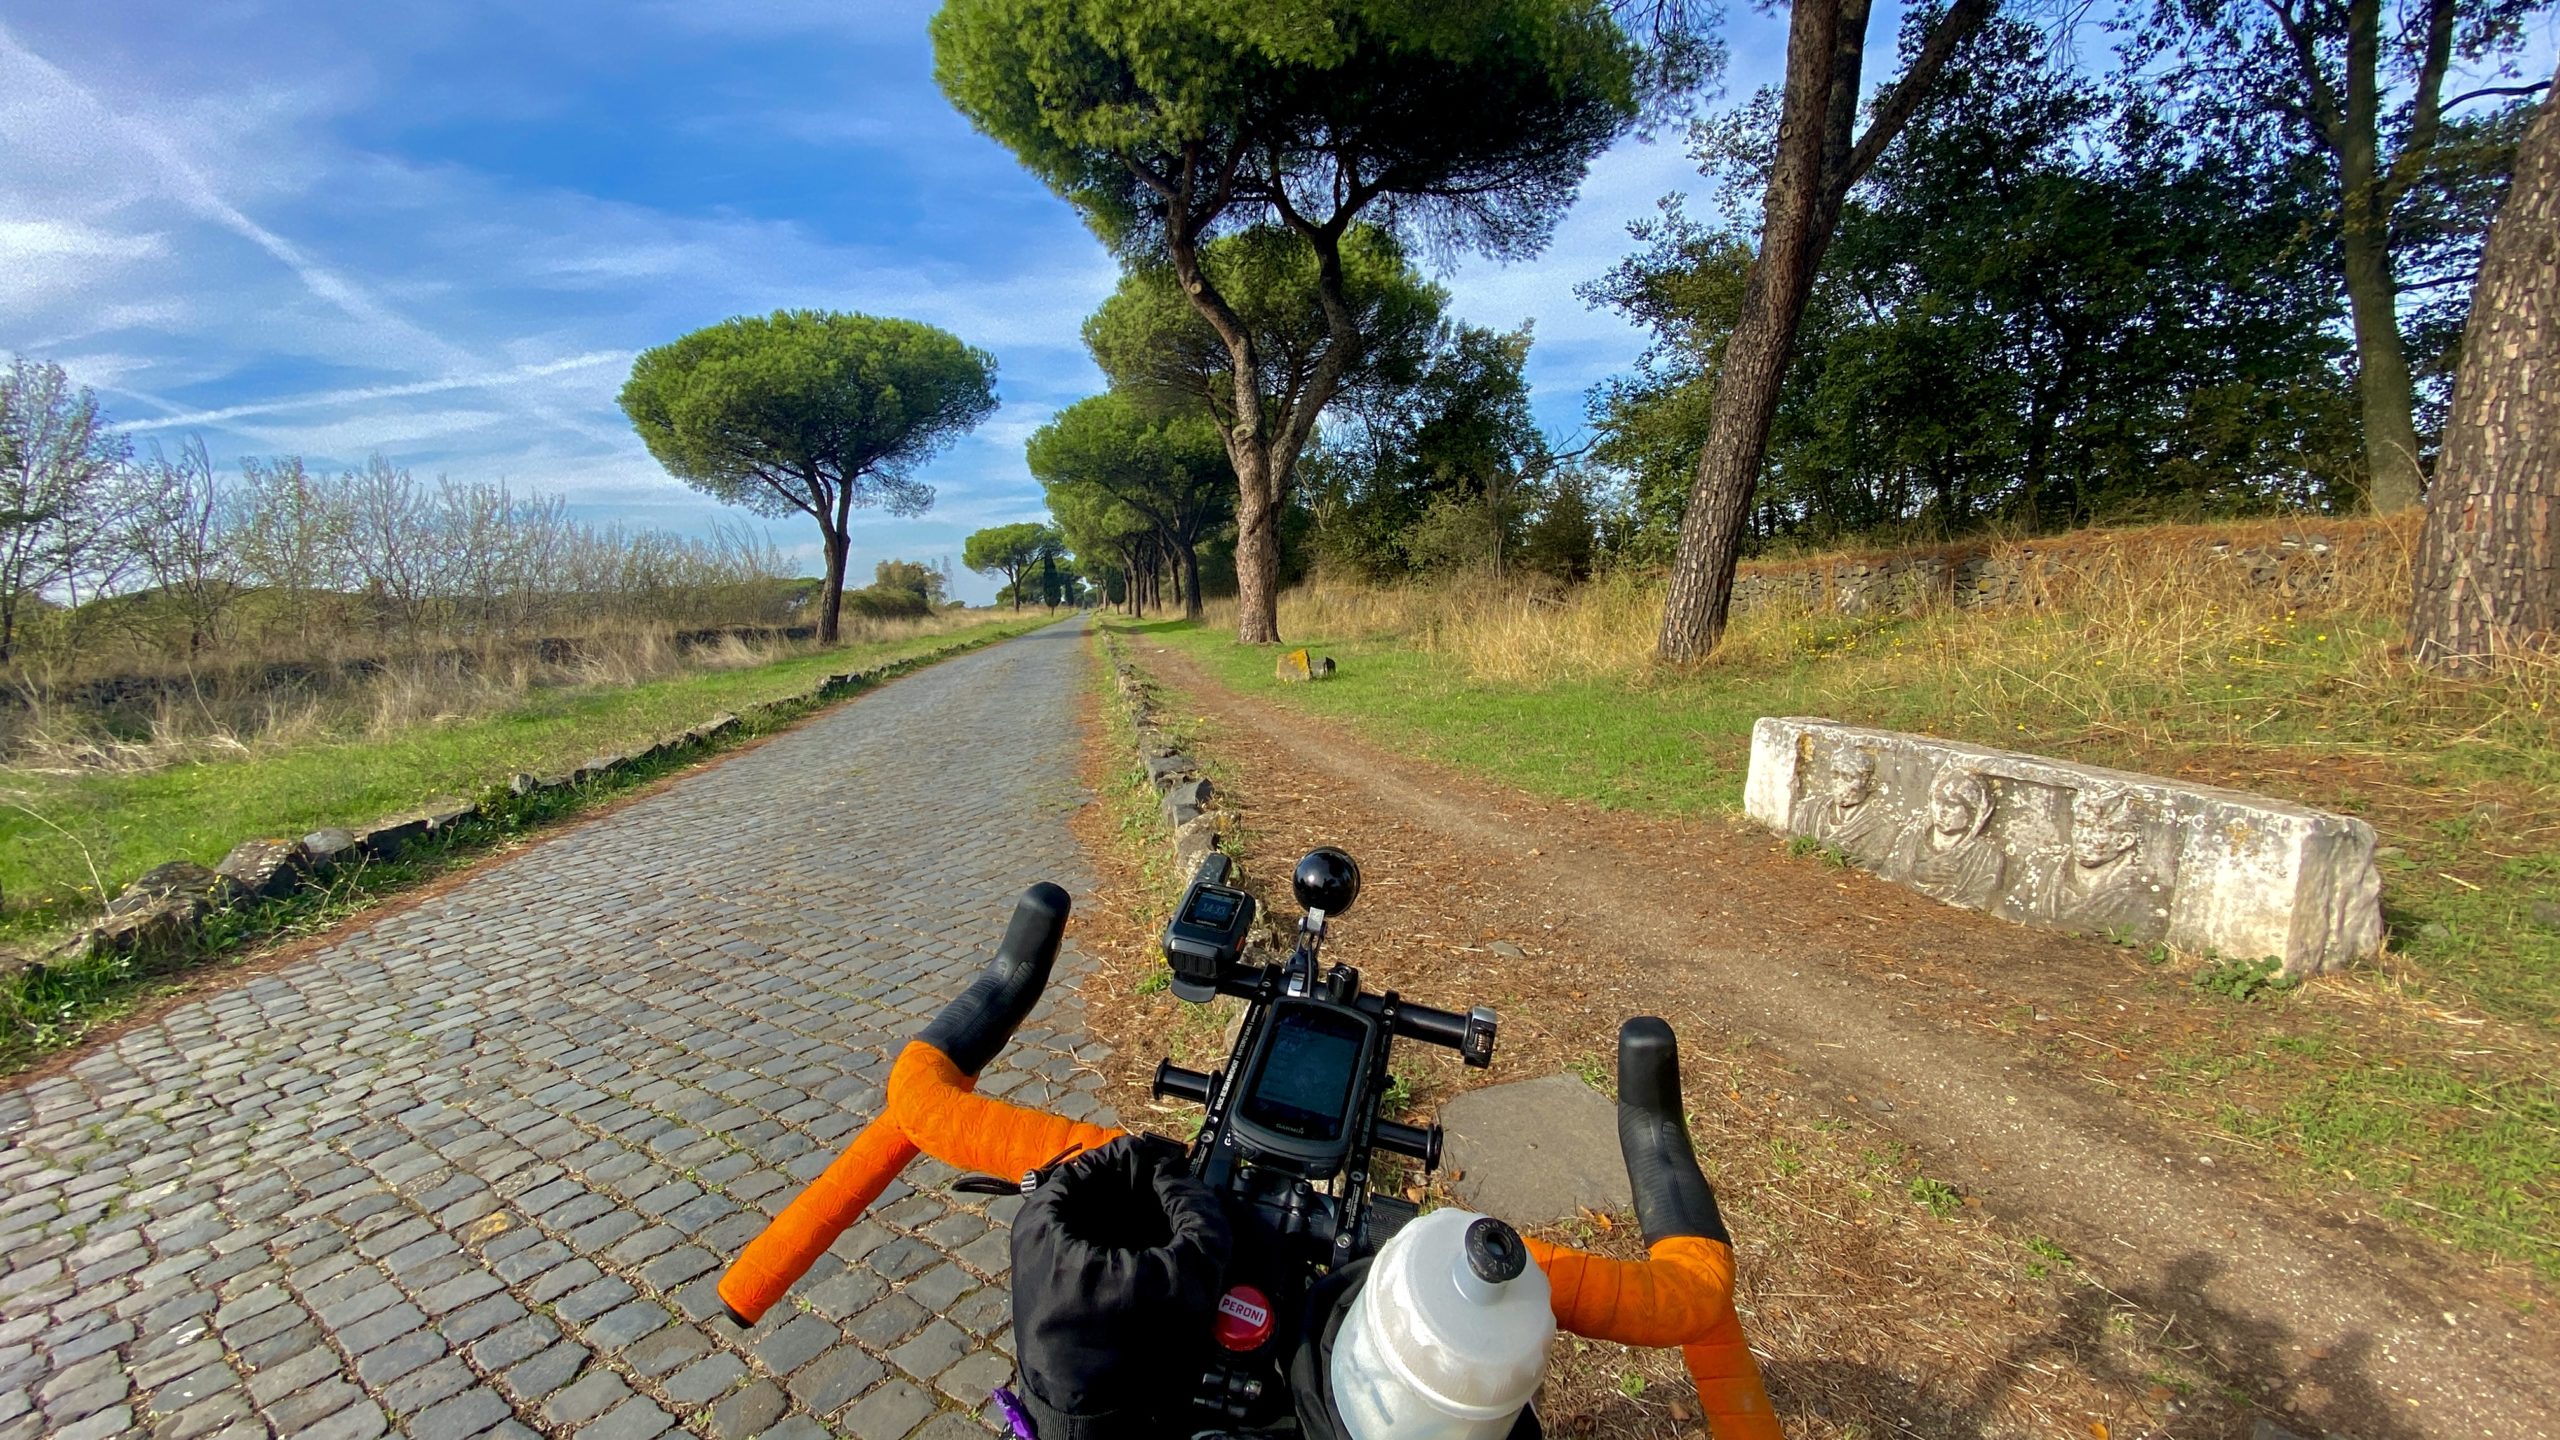 gps in bici,Appia antica in bici, cicloturismo in italia, cicloviaggio in Italia, cicloviaggi, viaggiatore lento, viaggiare in bici, Roma in bici, viaggiare in bicicletta, viaggi in bici italia